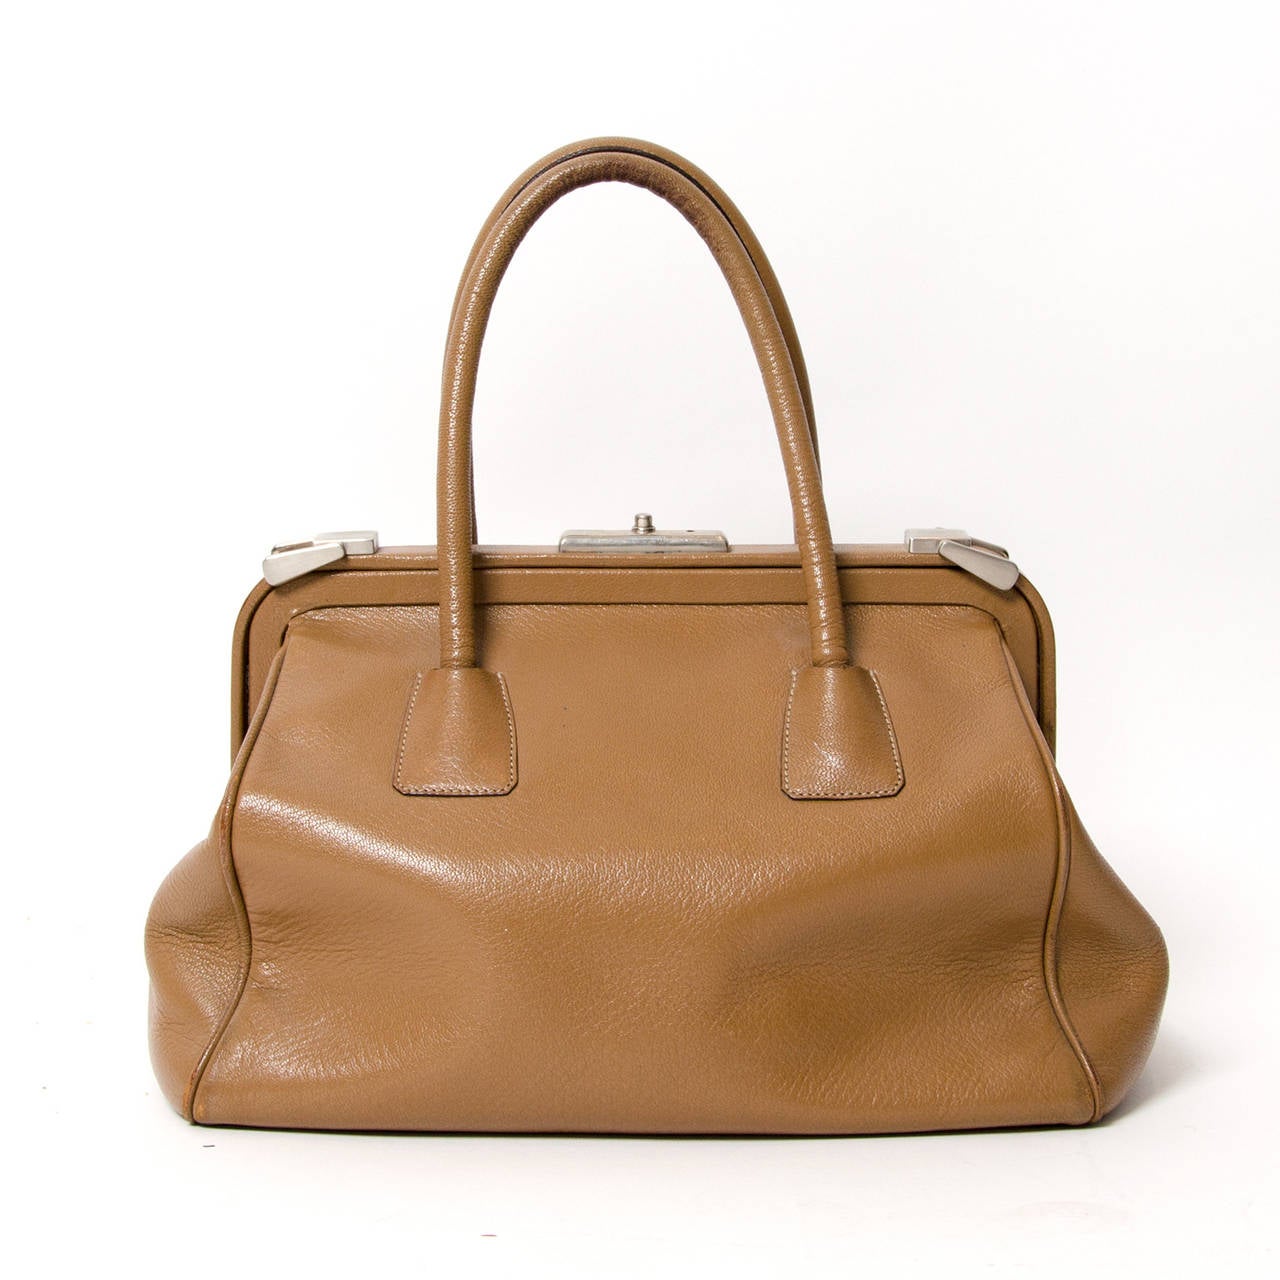 Prada Madras Leather Handbag